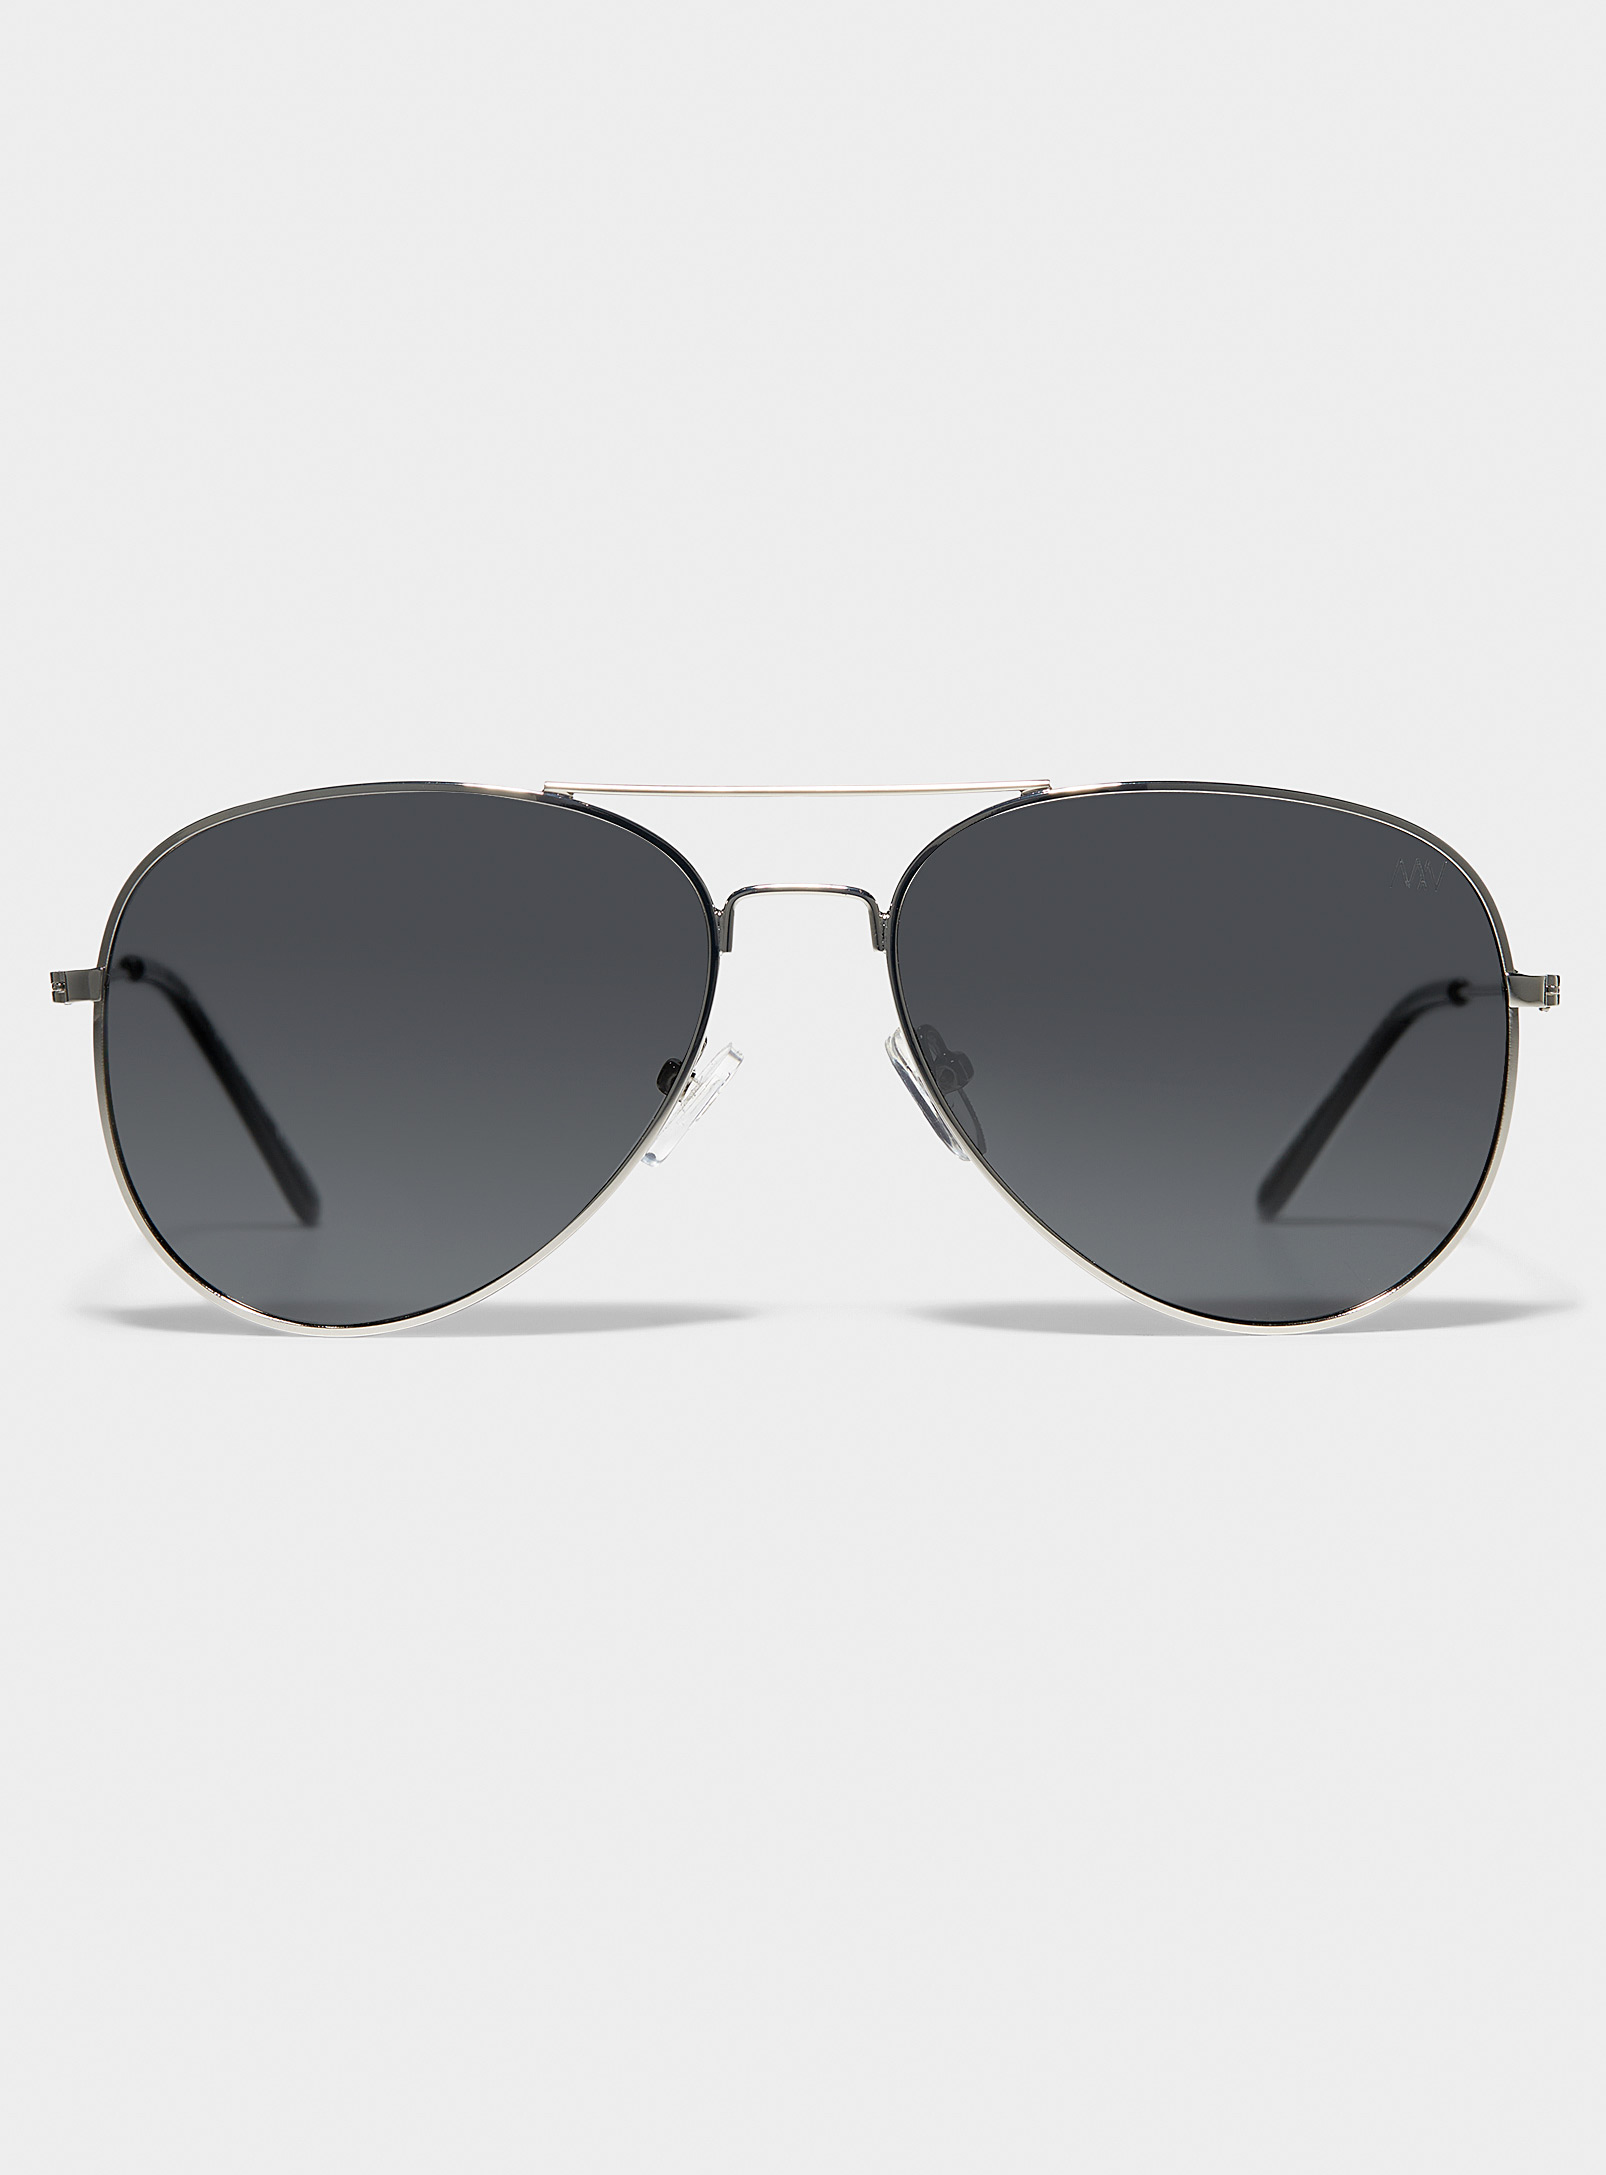 Matt & Nat Sadie Aviator Sunglasses In Black